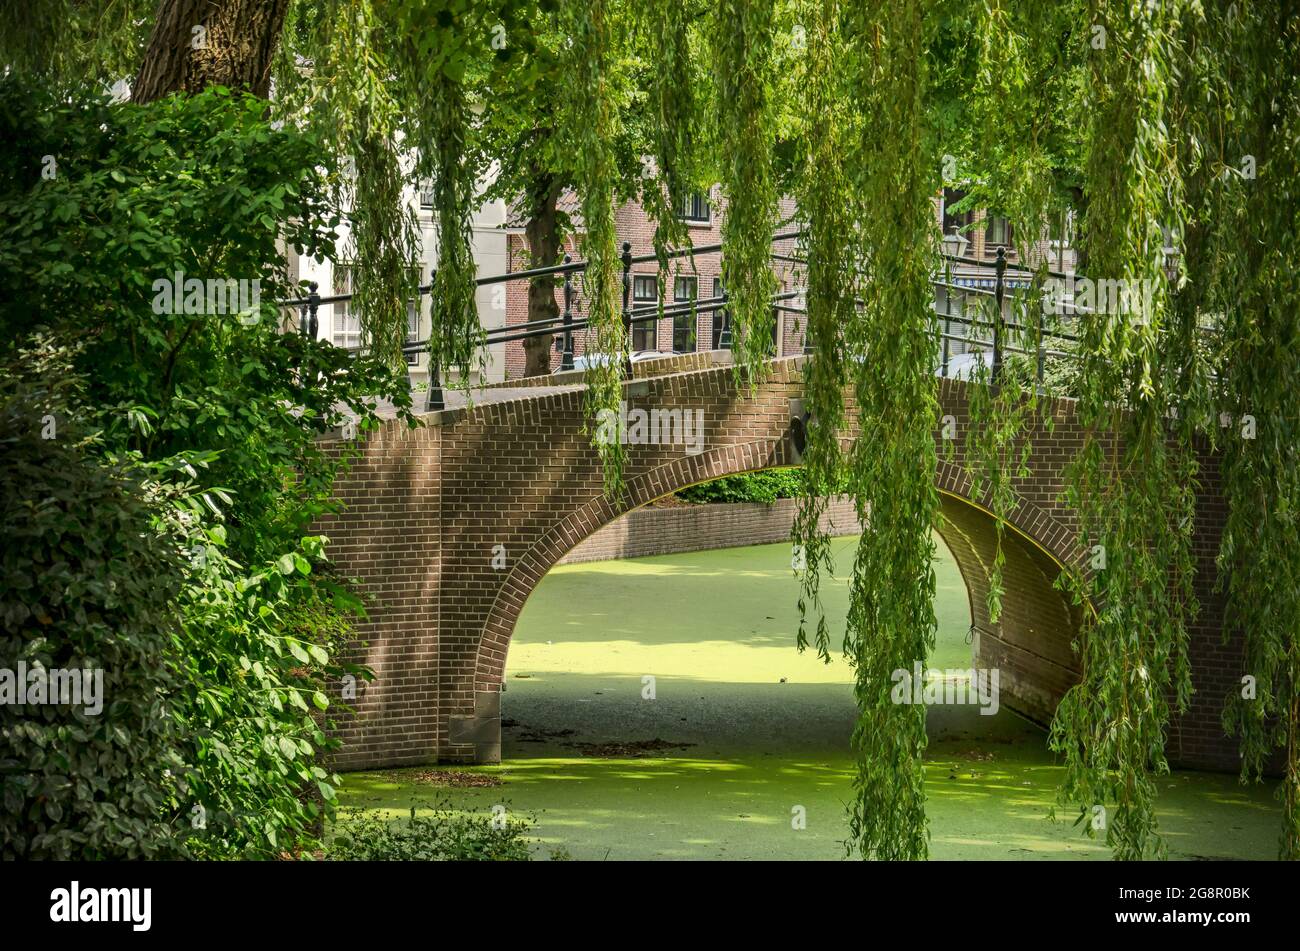 Rijnbrug, pays-Bas, 7 juillet 2021 : pont traversant le canal de Vliet dans la vieille ville, encadré dans le vert des duckweed et des saules pleureurs Banque D'Images